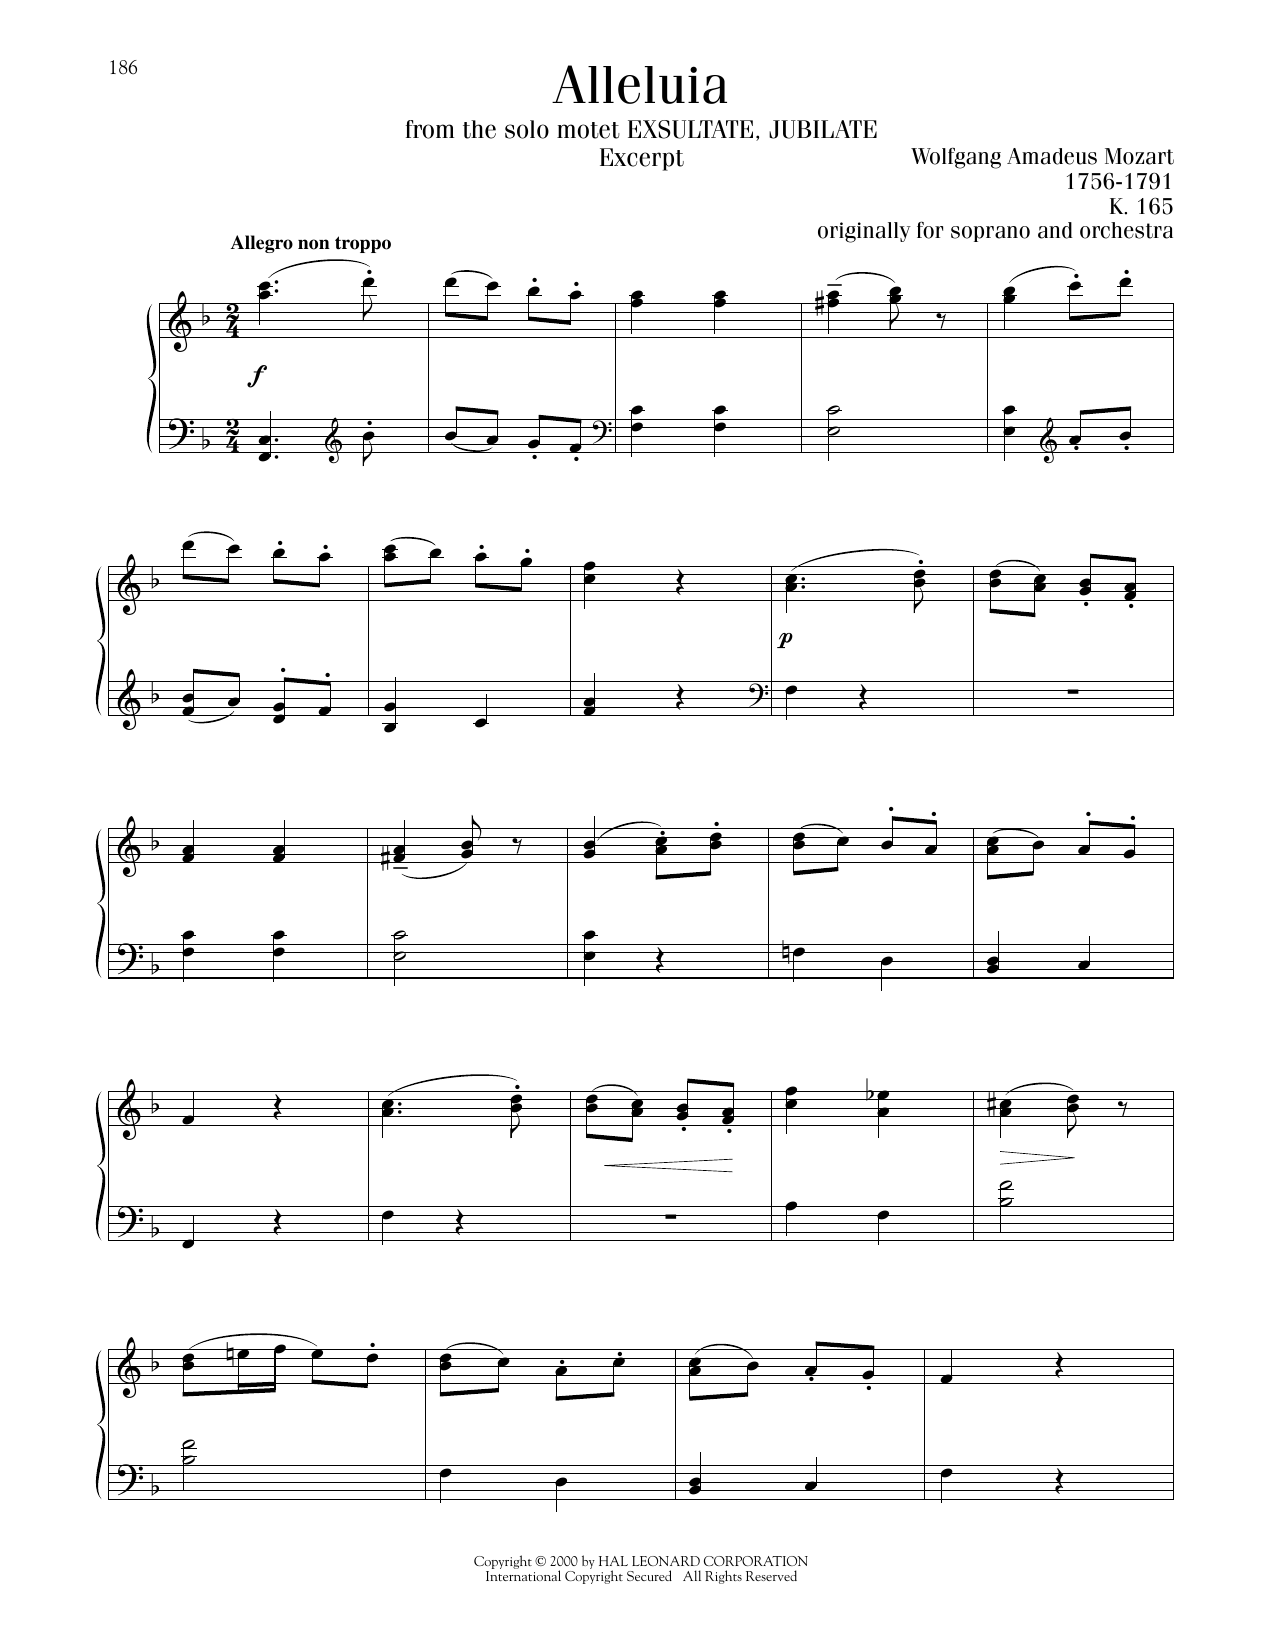 Wolfgang Amadeus Mozart Alleluia, K. 165 sheet music notes printable PDF score